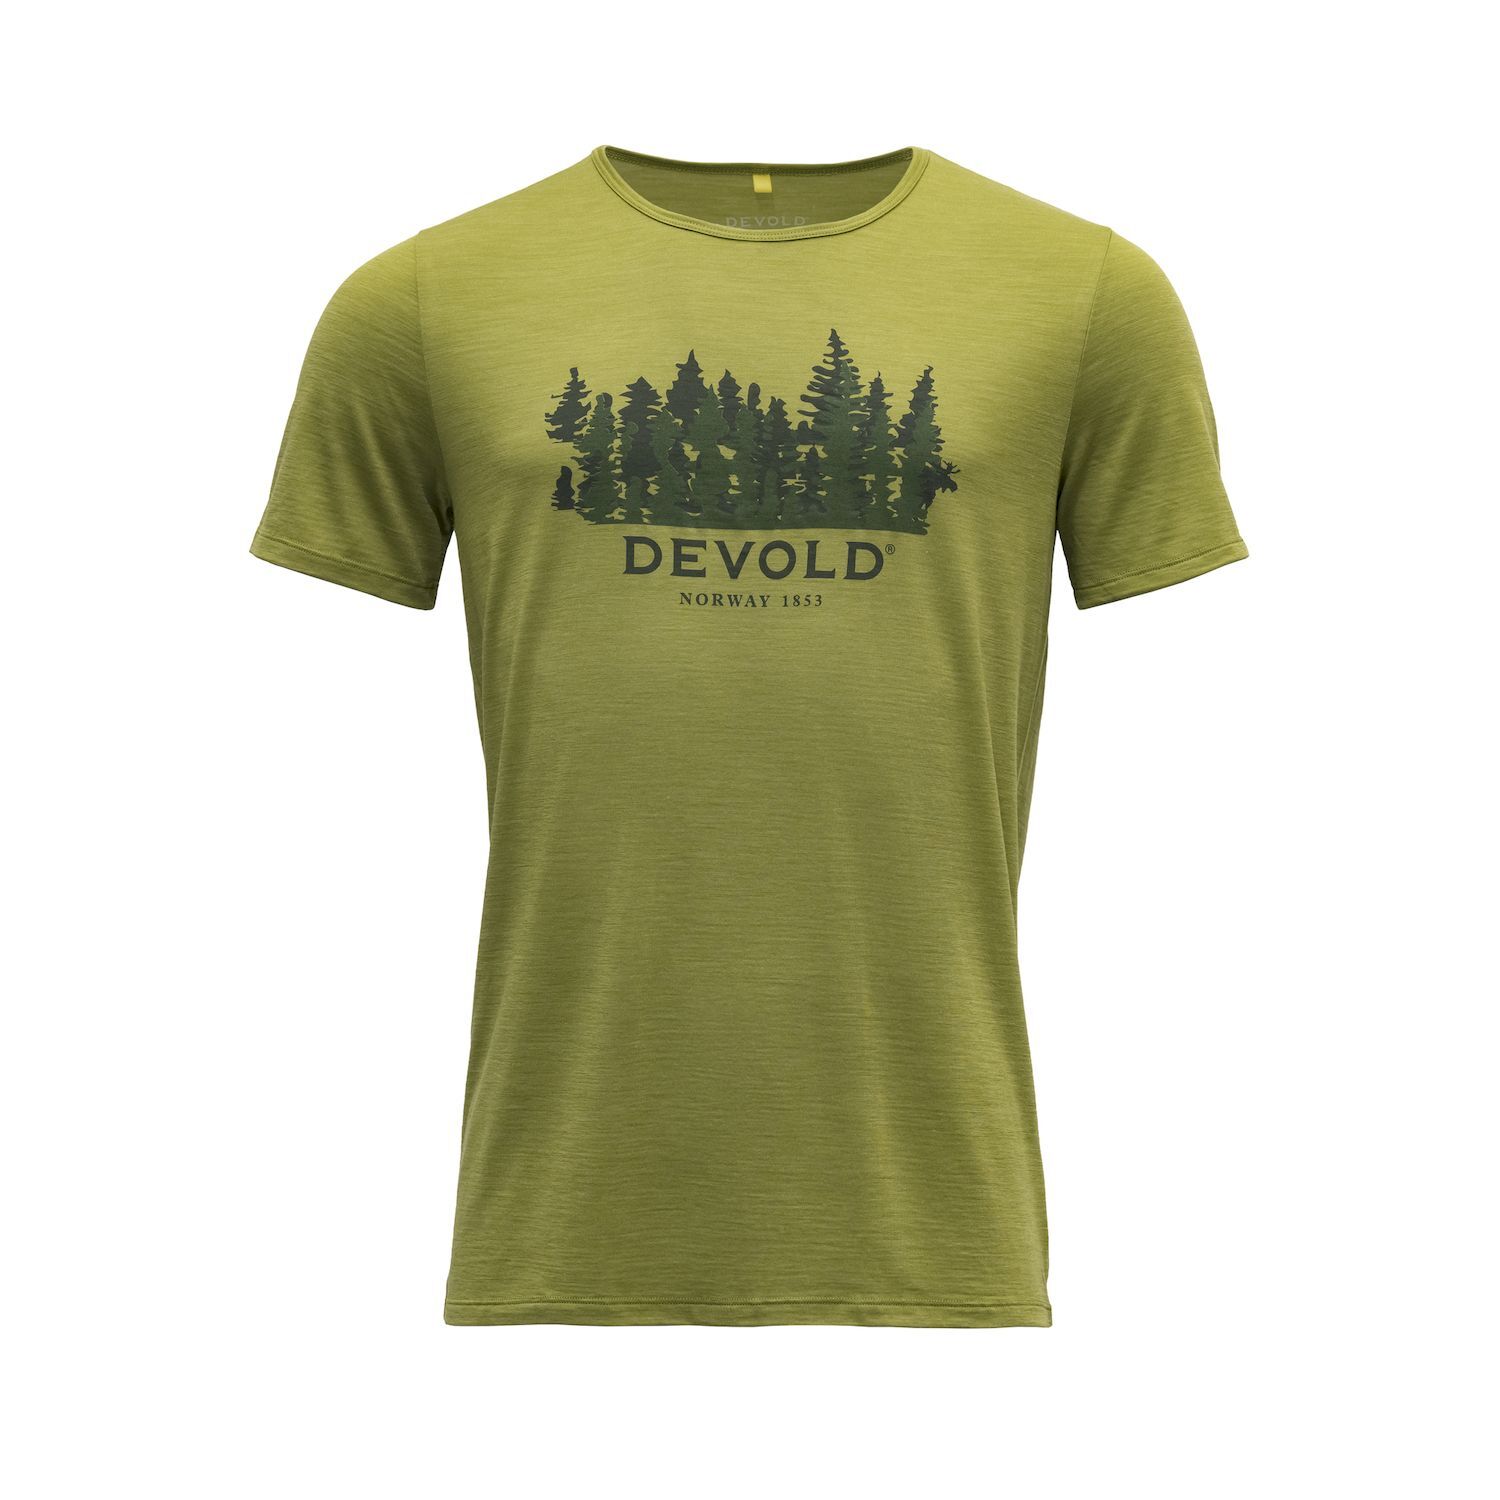 Devold Ørnakken Forest - Camiseta lana merino - Hombre